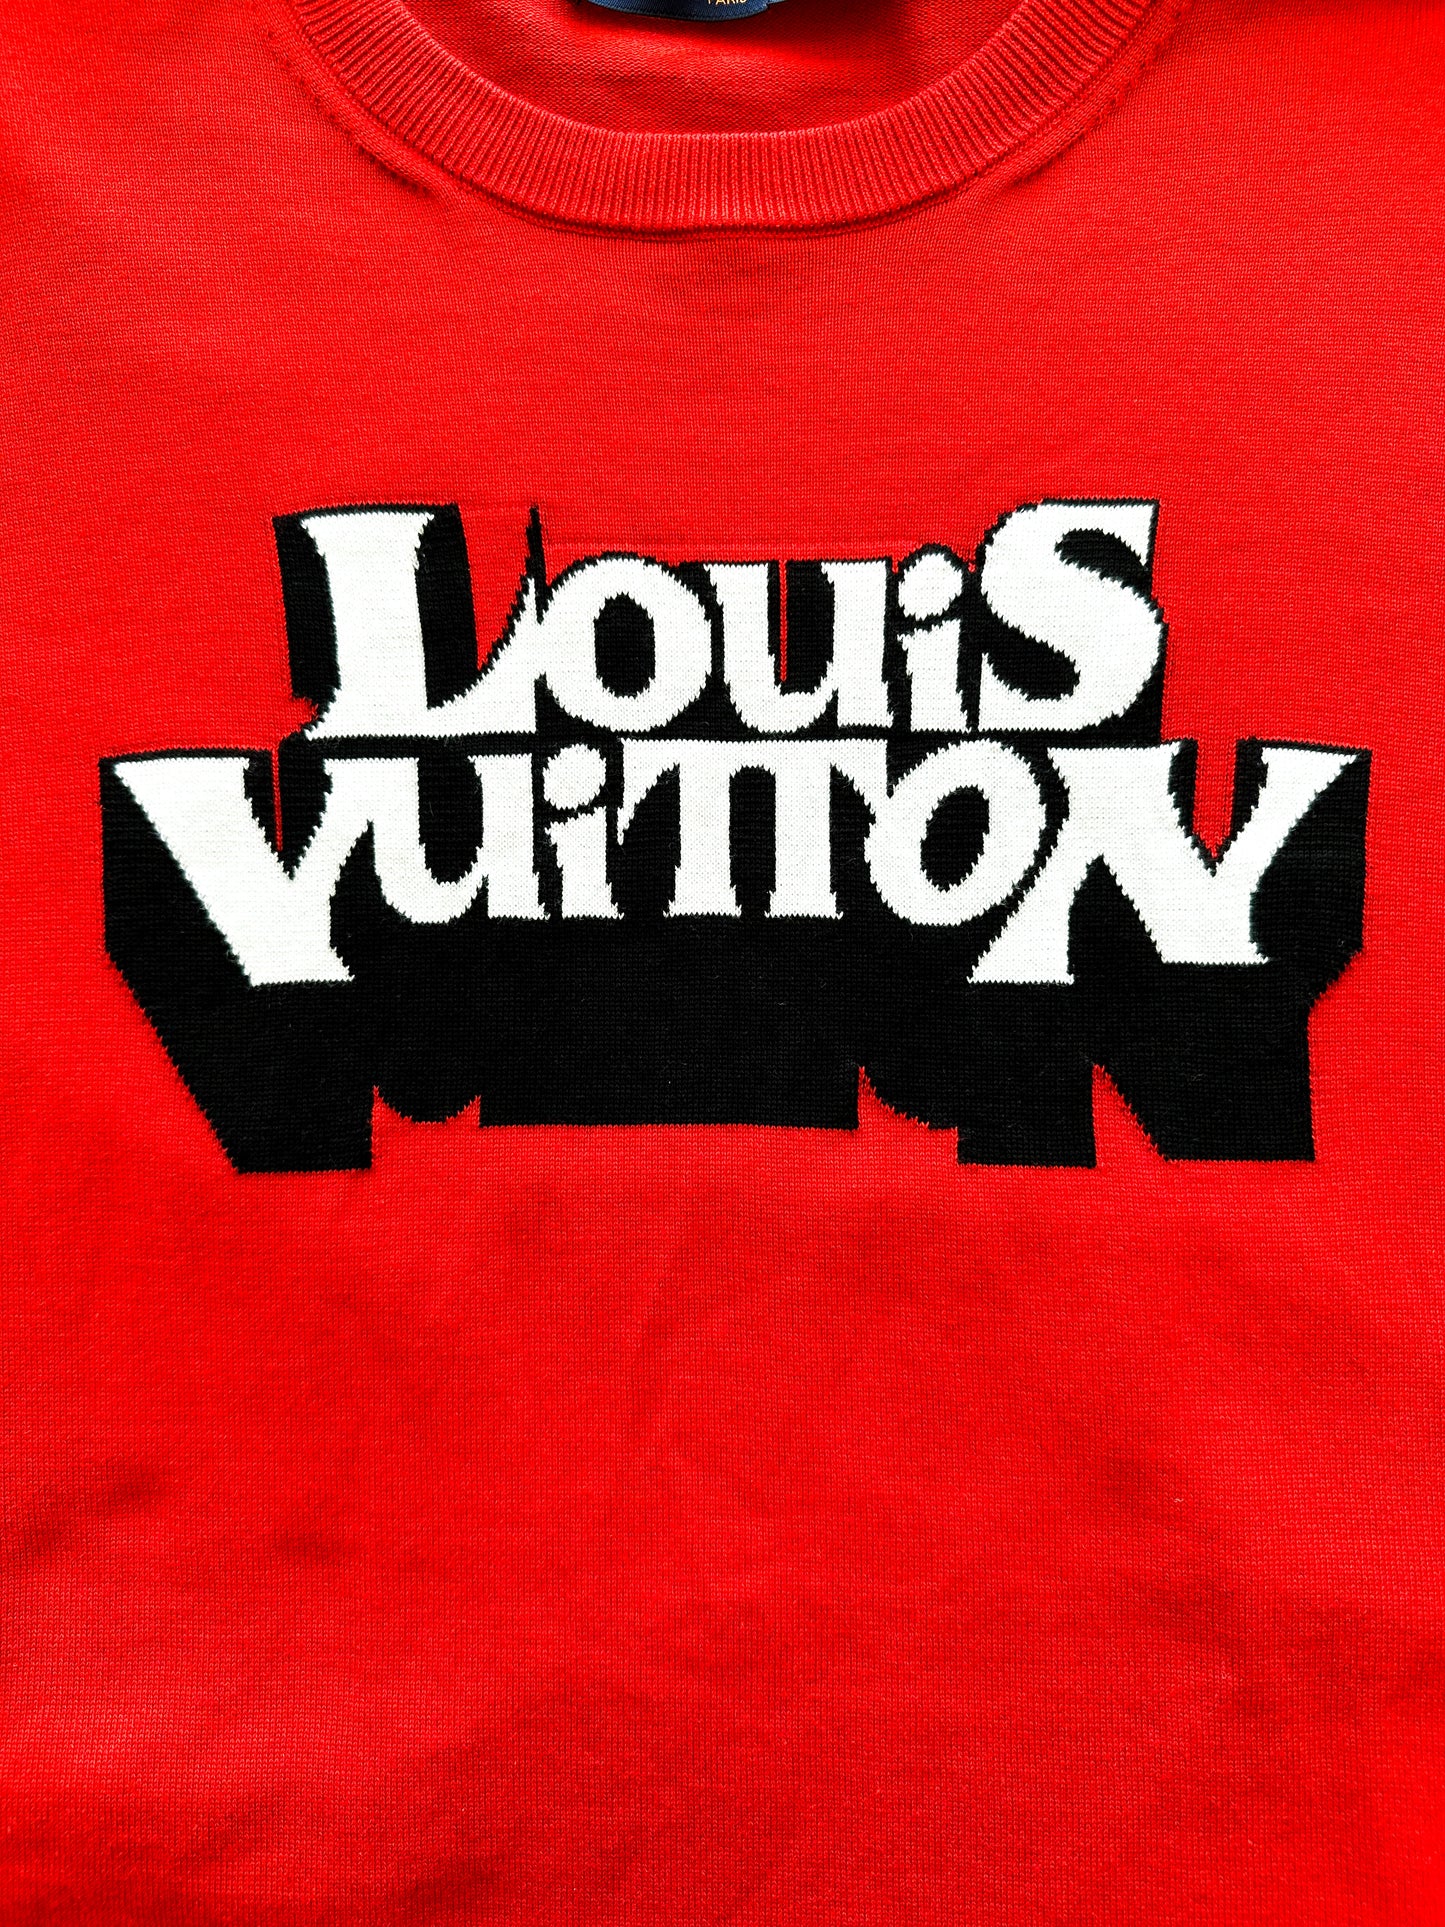 Louis Vuitton White Malletier Paris 1854 Graphic T-Shirt